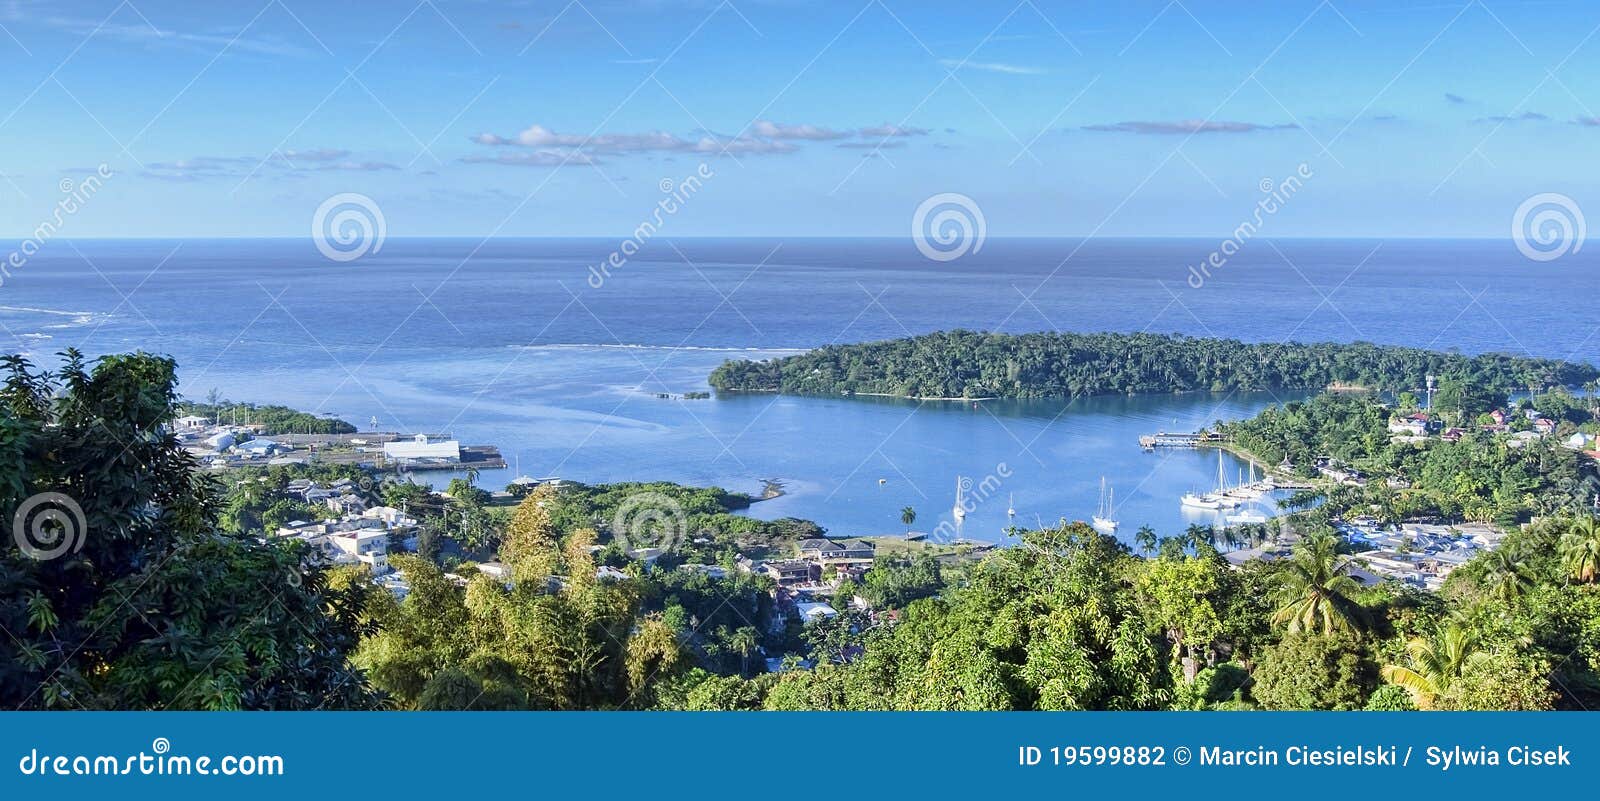 port antonio, jamaica